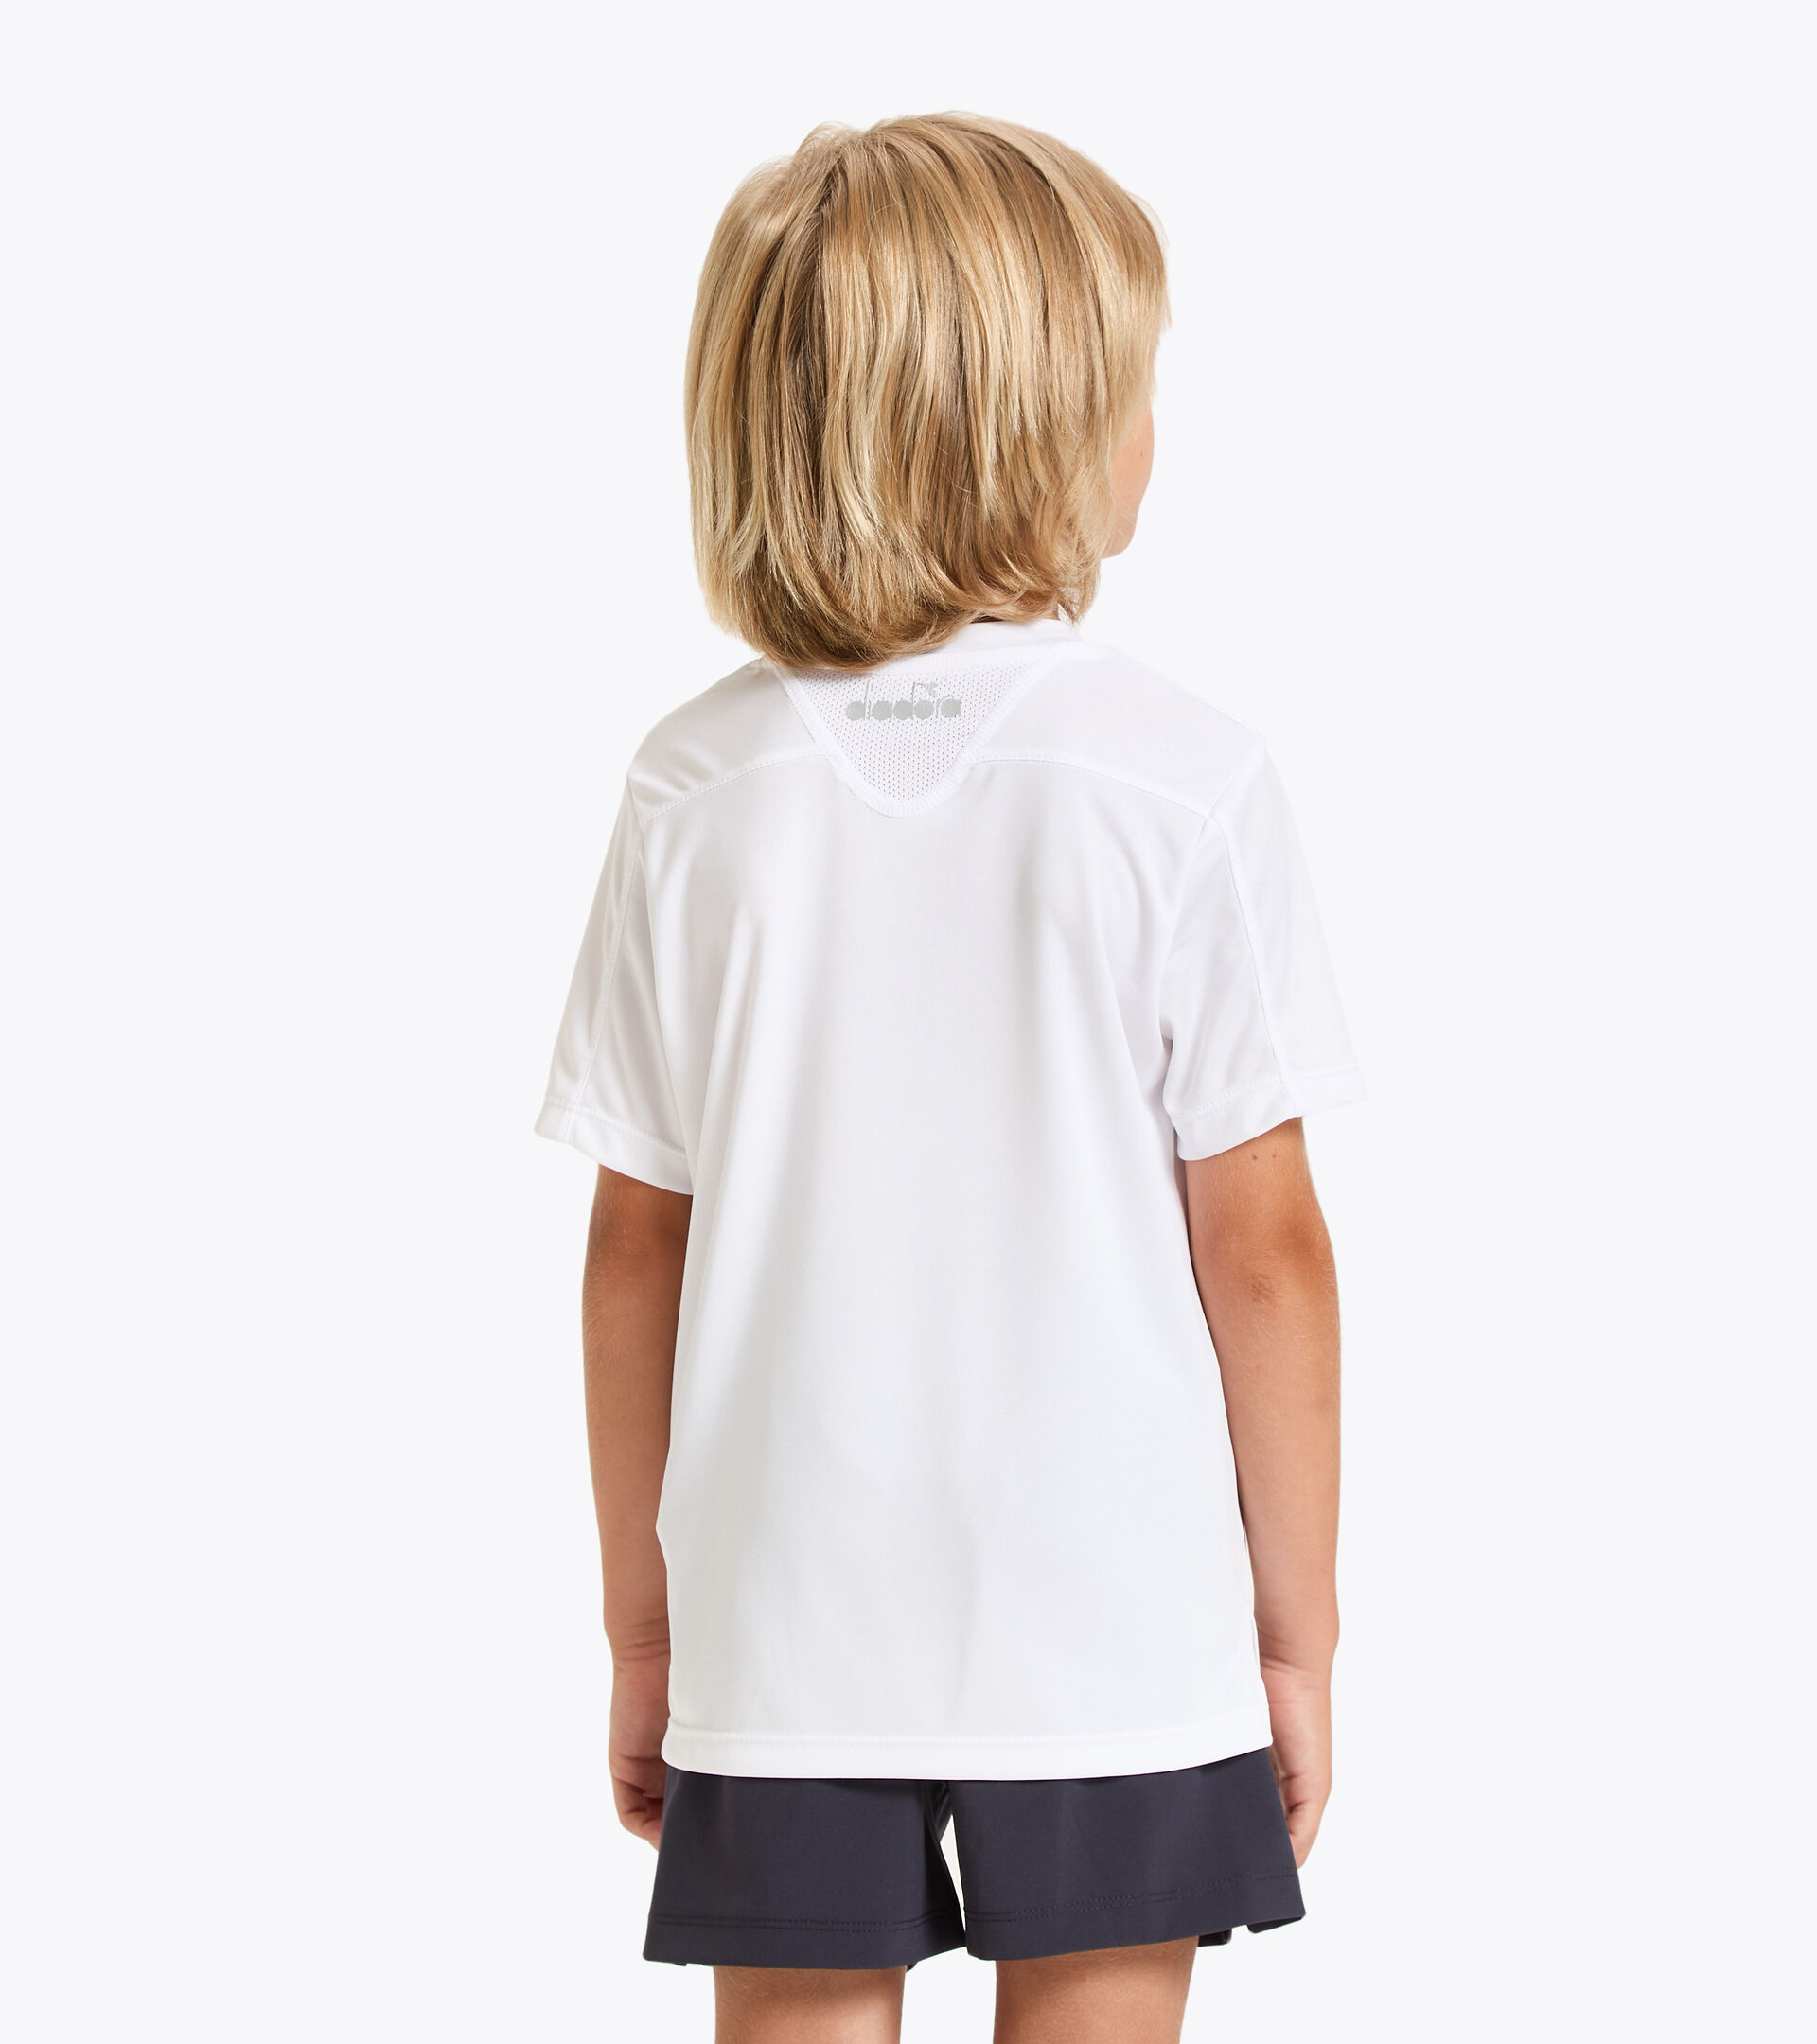 Camiseta de tenis - Junior J. T-SHIRT TEAM BLANCO VIVO - Diadora